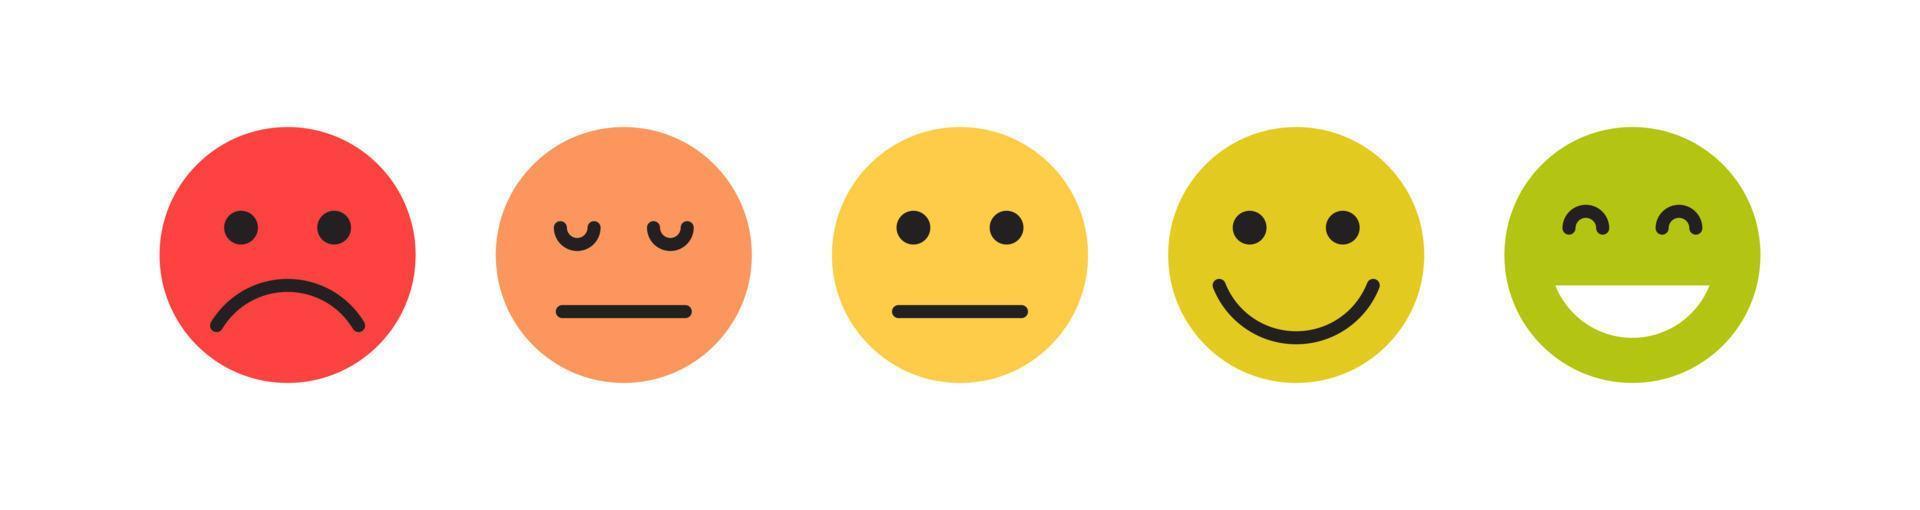 feedback dei clienti espressioni facciali ed espressioni semplici diverse illustrazioni vettoriali piatte del sorriso dei cartoni animati.